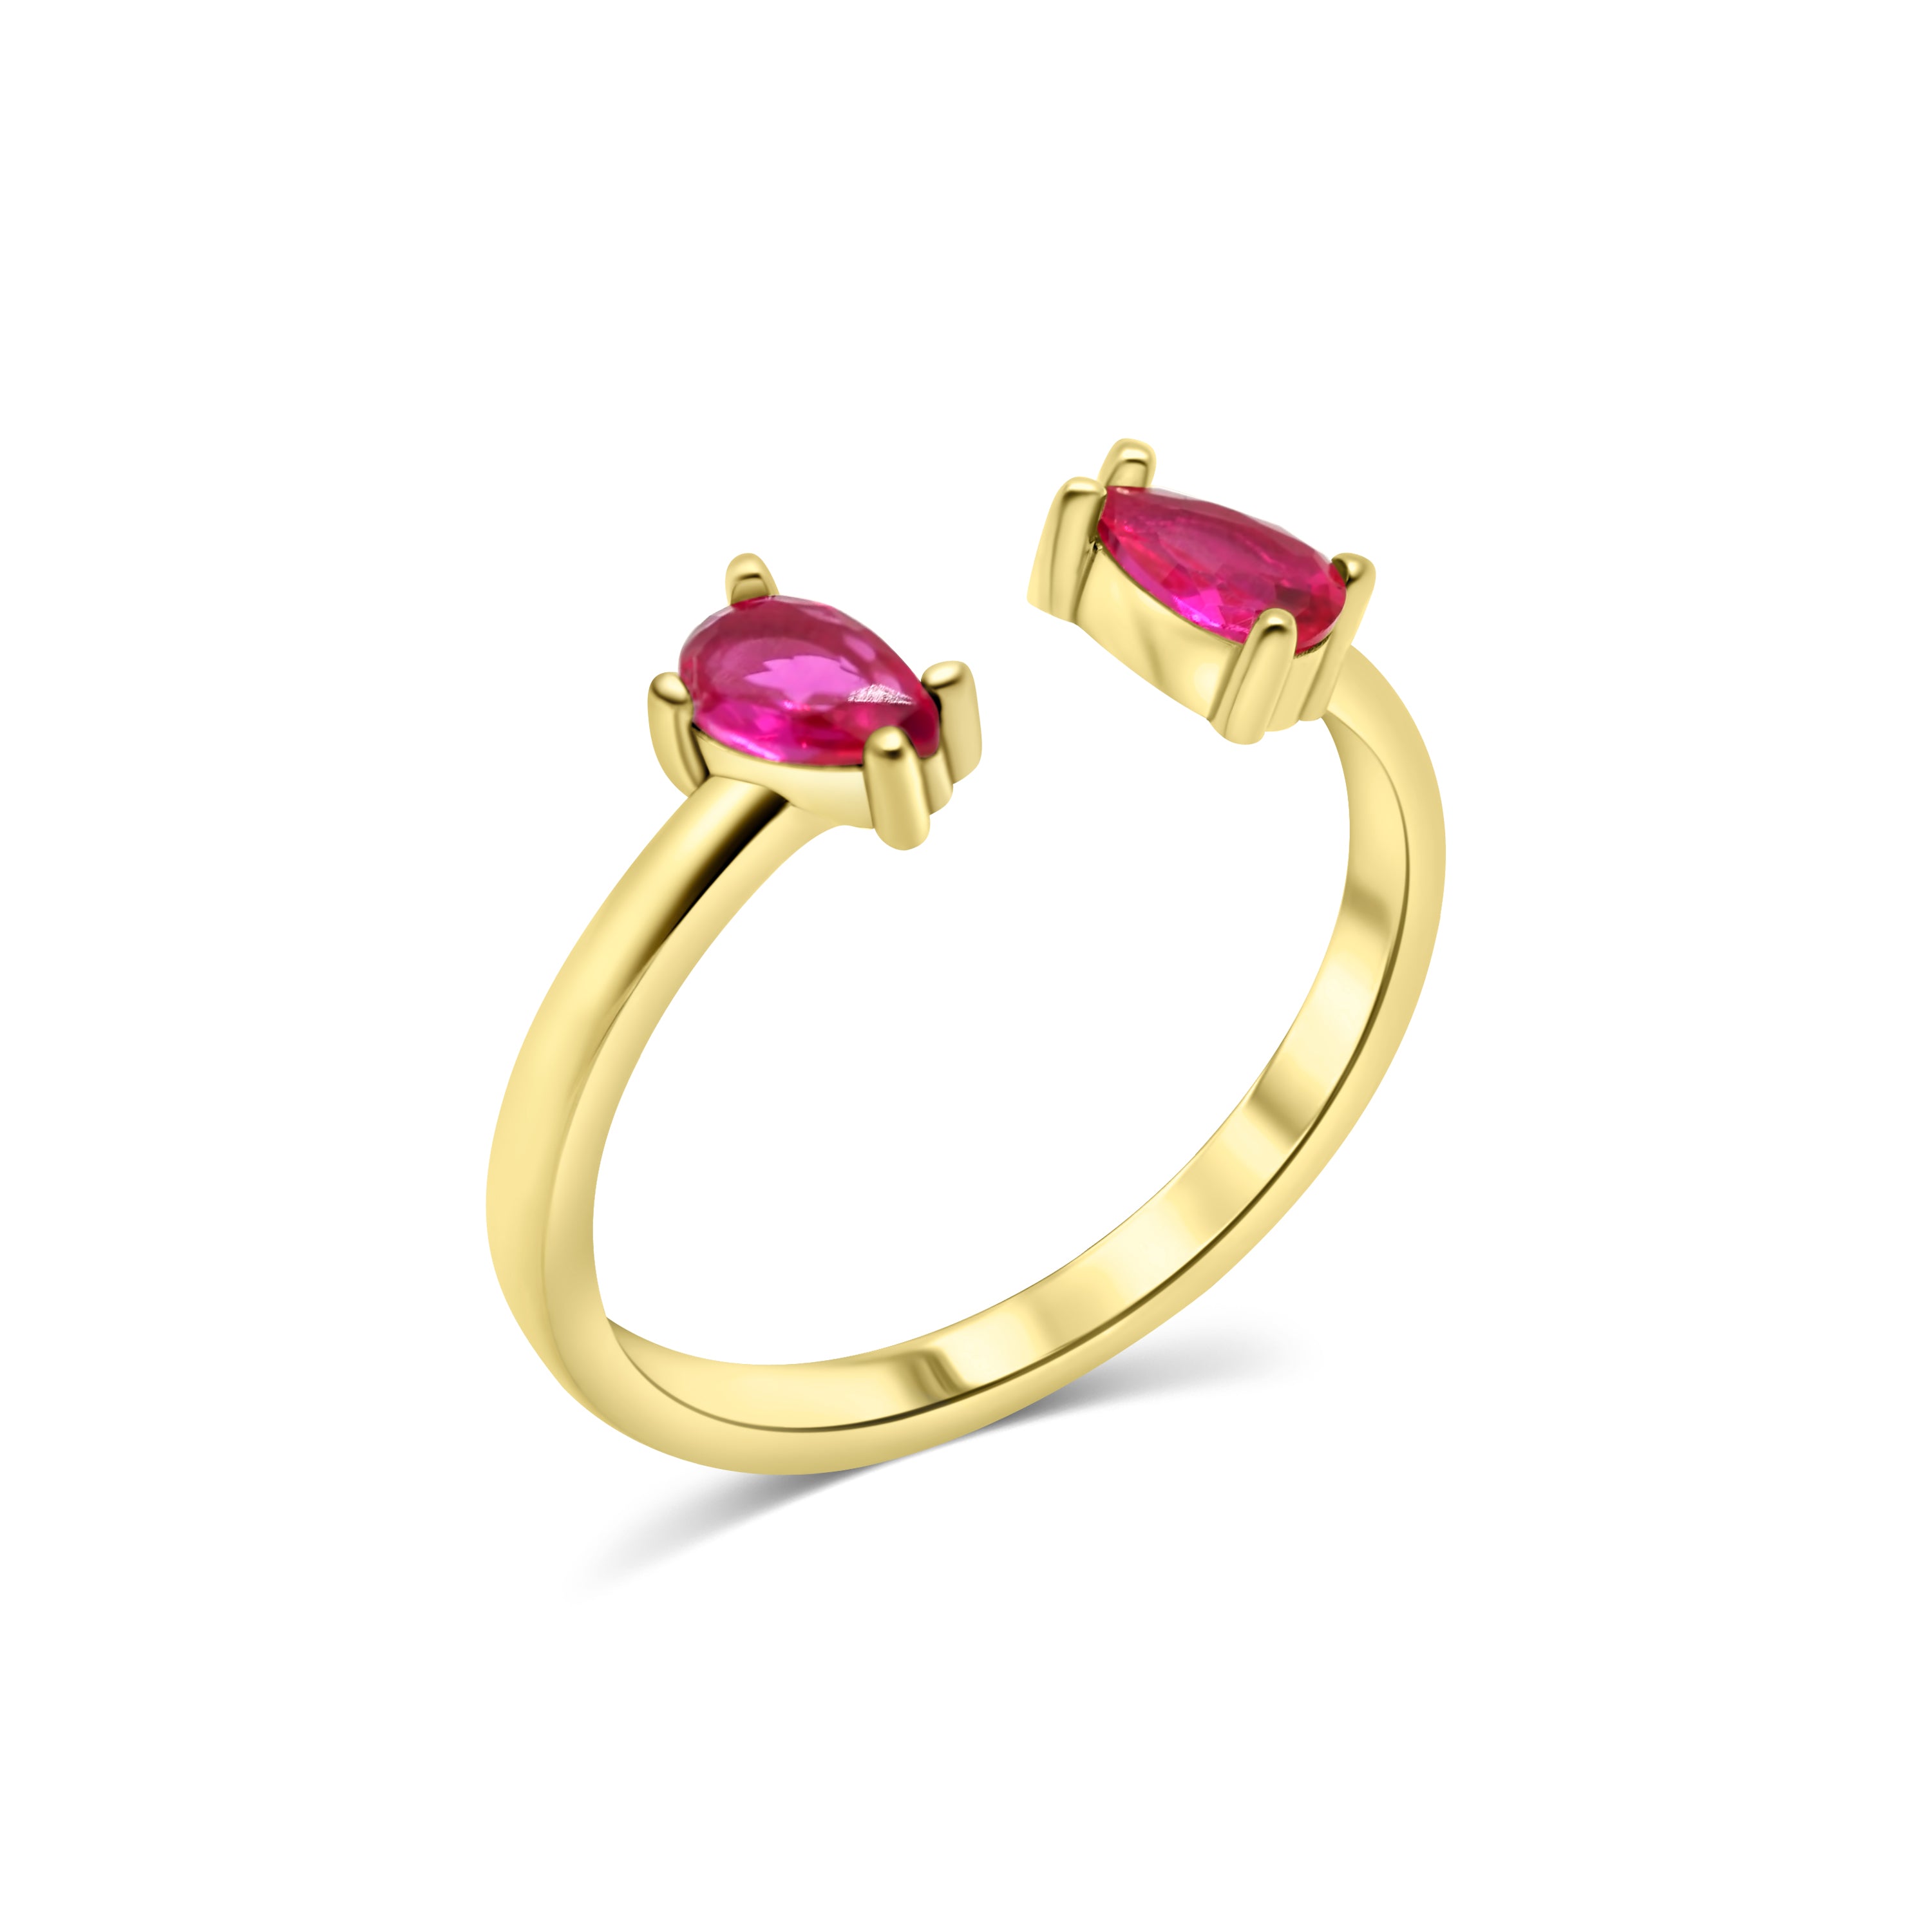 Natural Ruby Panchdhatu Ring, Manik Gemstone Ring - Shraddha Shree Gems